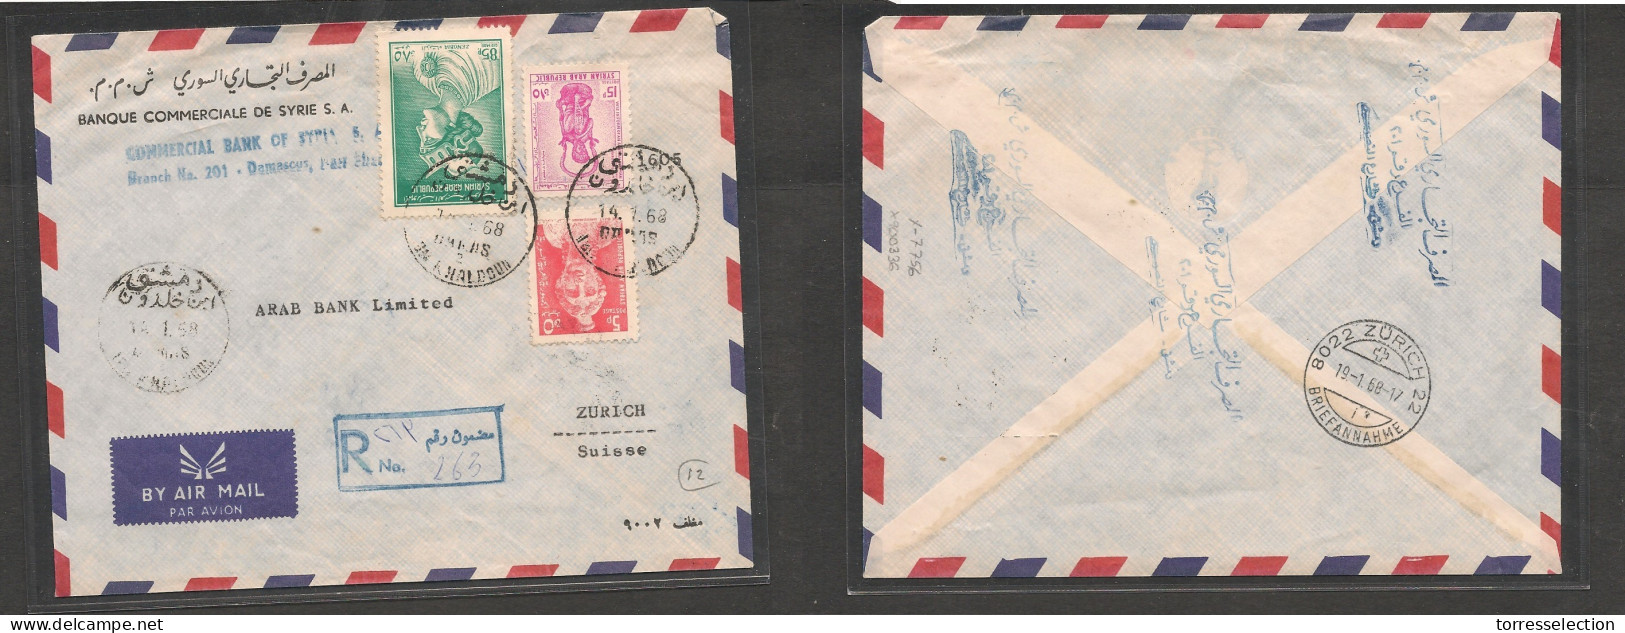 SYRIA. Syria Cover - 1968 Damascus To Switz Zurich Registr Air Mult Fkd Env Nah Khaldoun, Vf XSALE. - Syrie